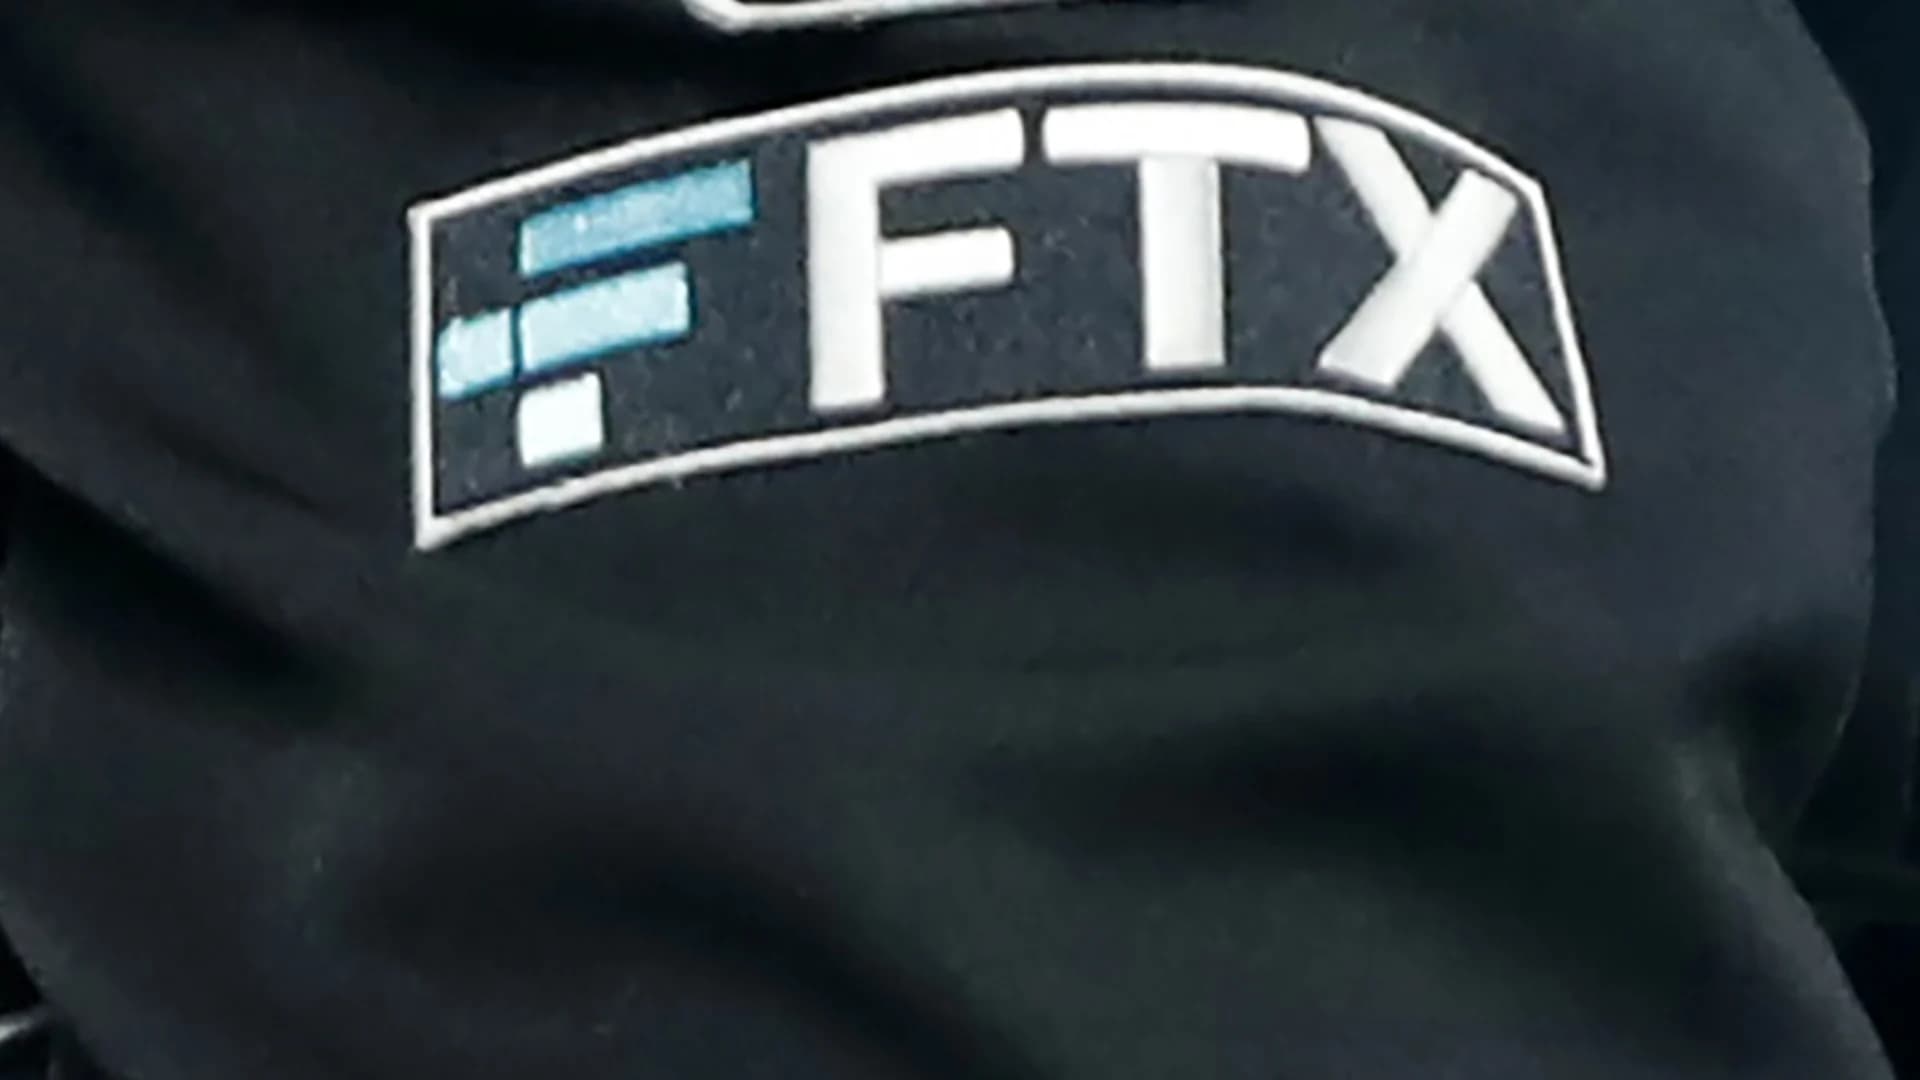 Bankrupt exchange FTX owes top creditors over $3 billion